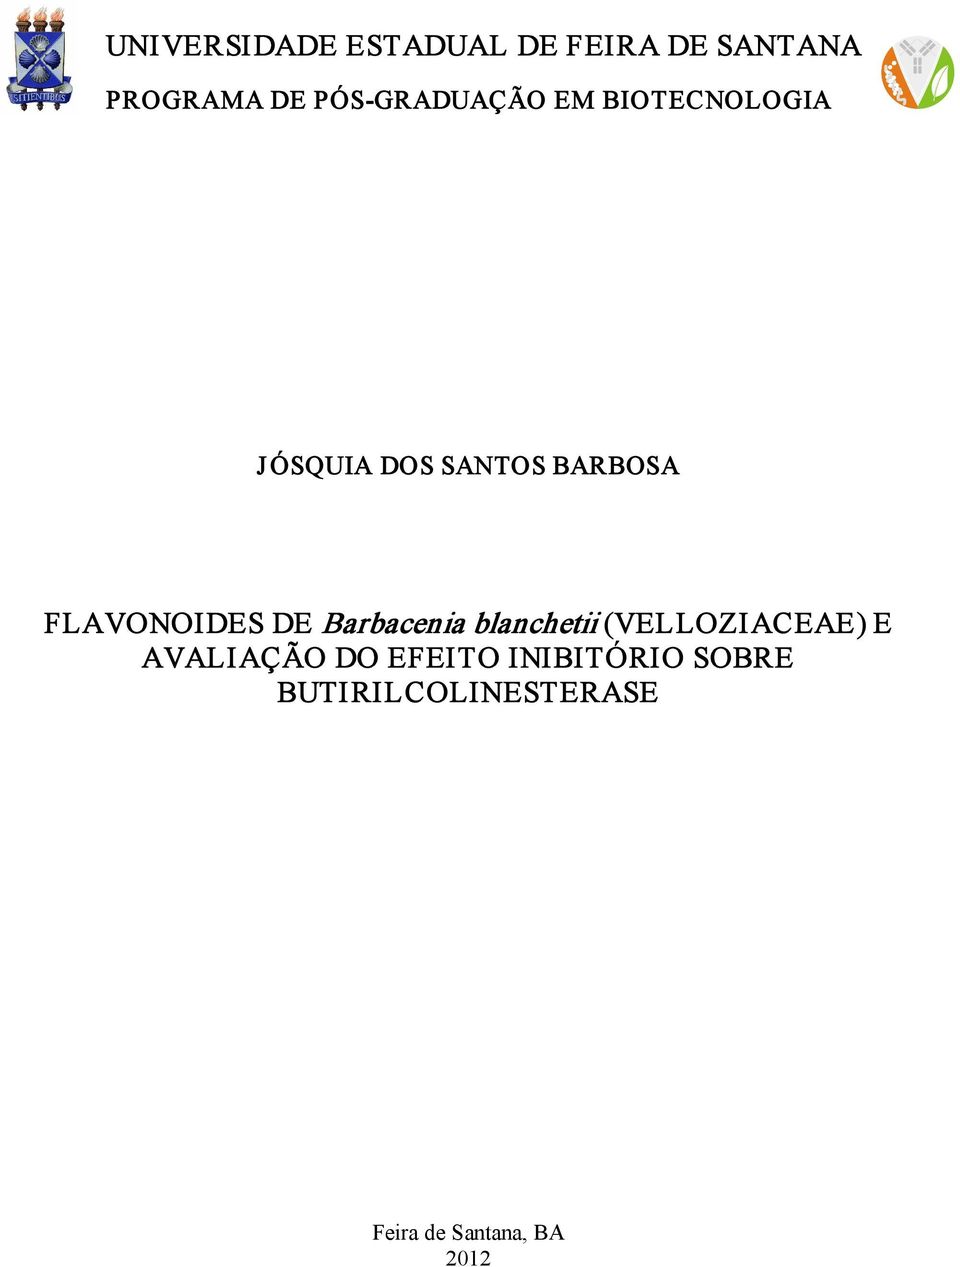 FLAVONOIDES DE Barbacenia blanchetii (VELLOZIACEAE) E